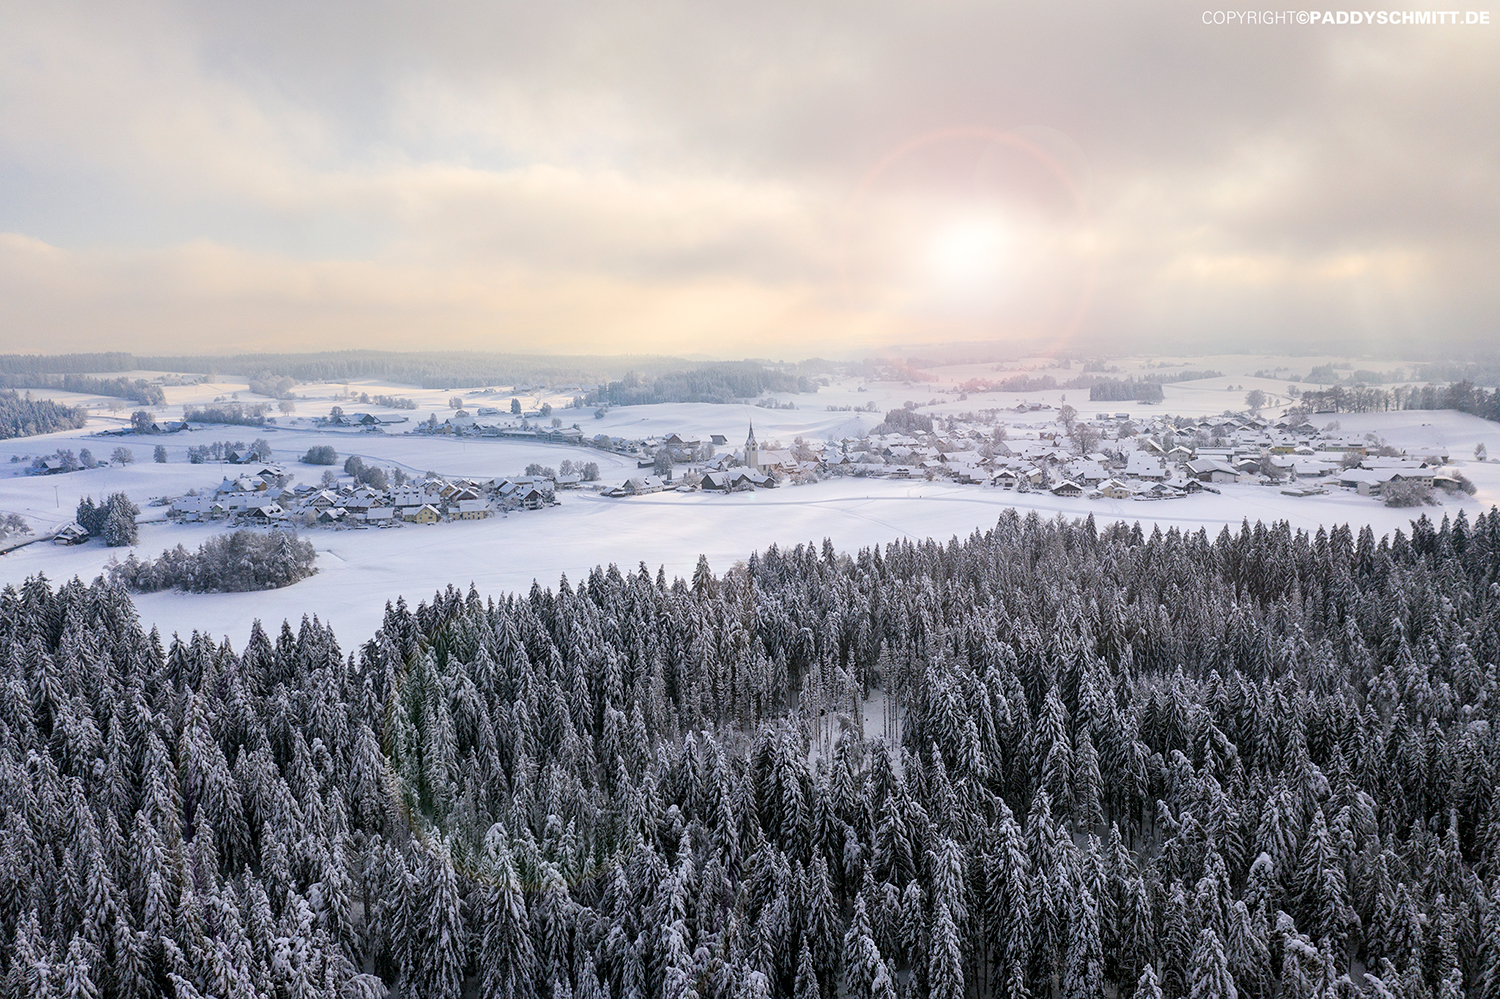 Allgaeuer Dorf im Winter von oben fotografiert.